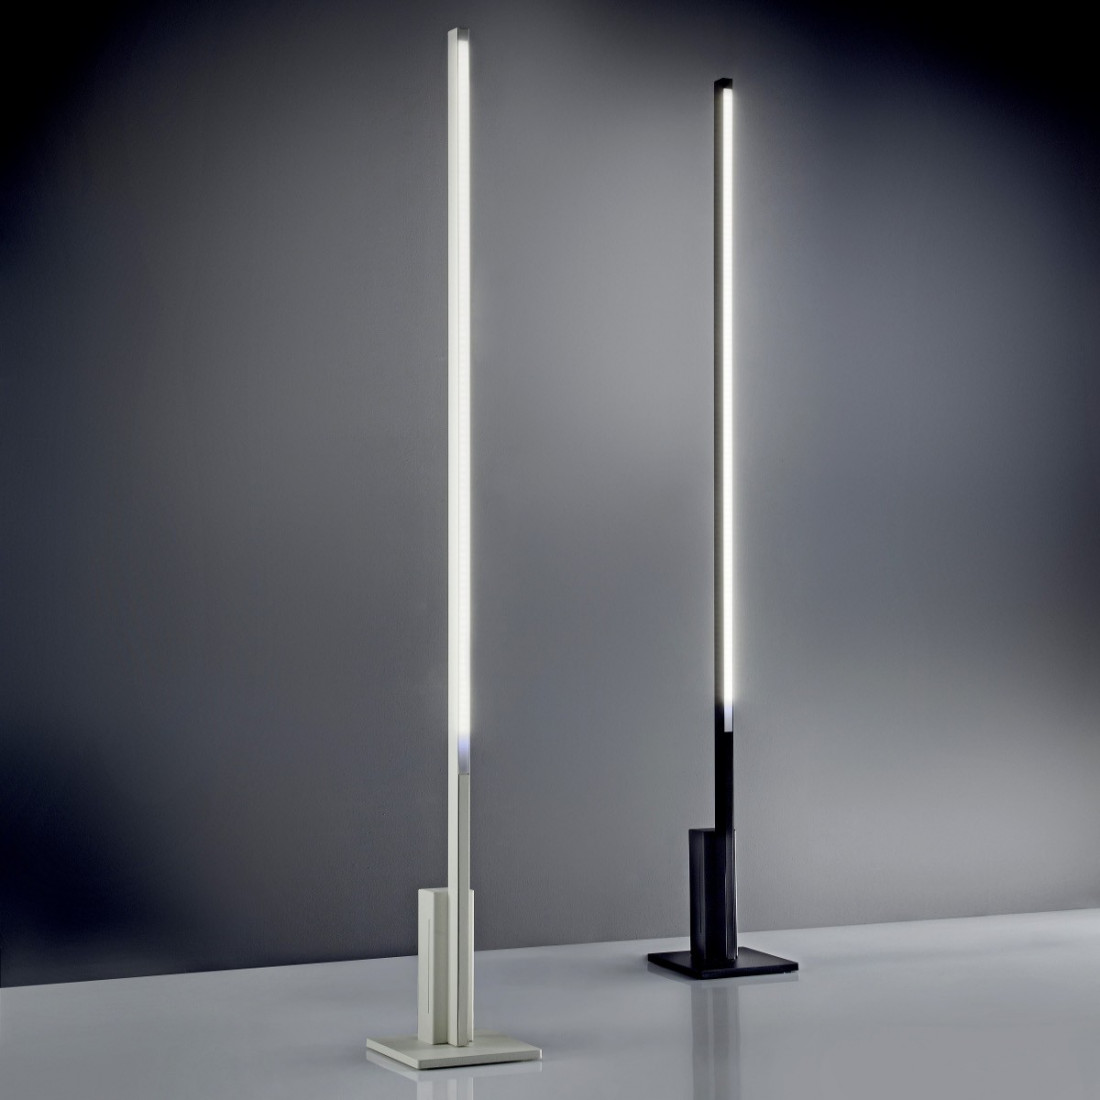 Lampadaire FB-ELLE 2089 T 60W LED 5500LM variateur tactile métal blanc noir lampadaire moderne